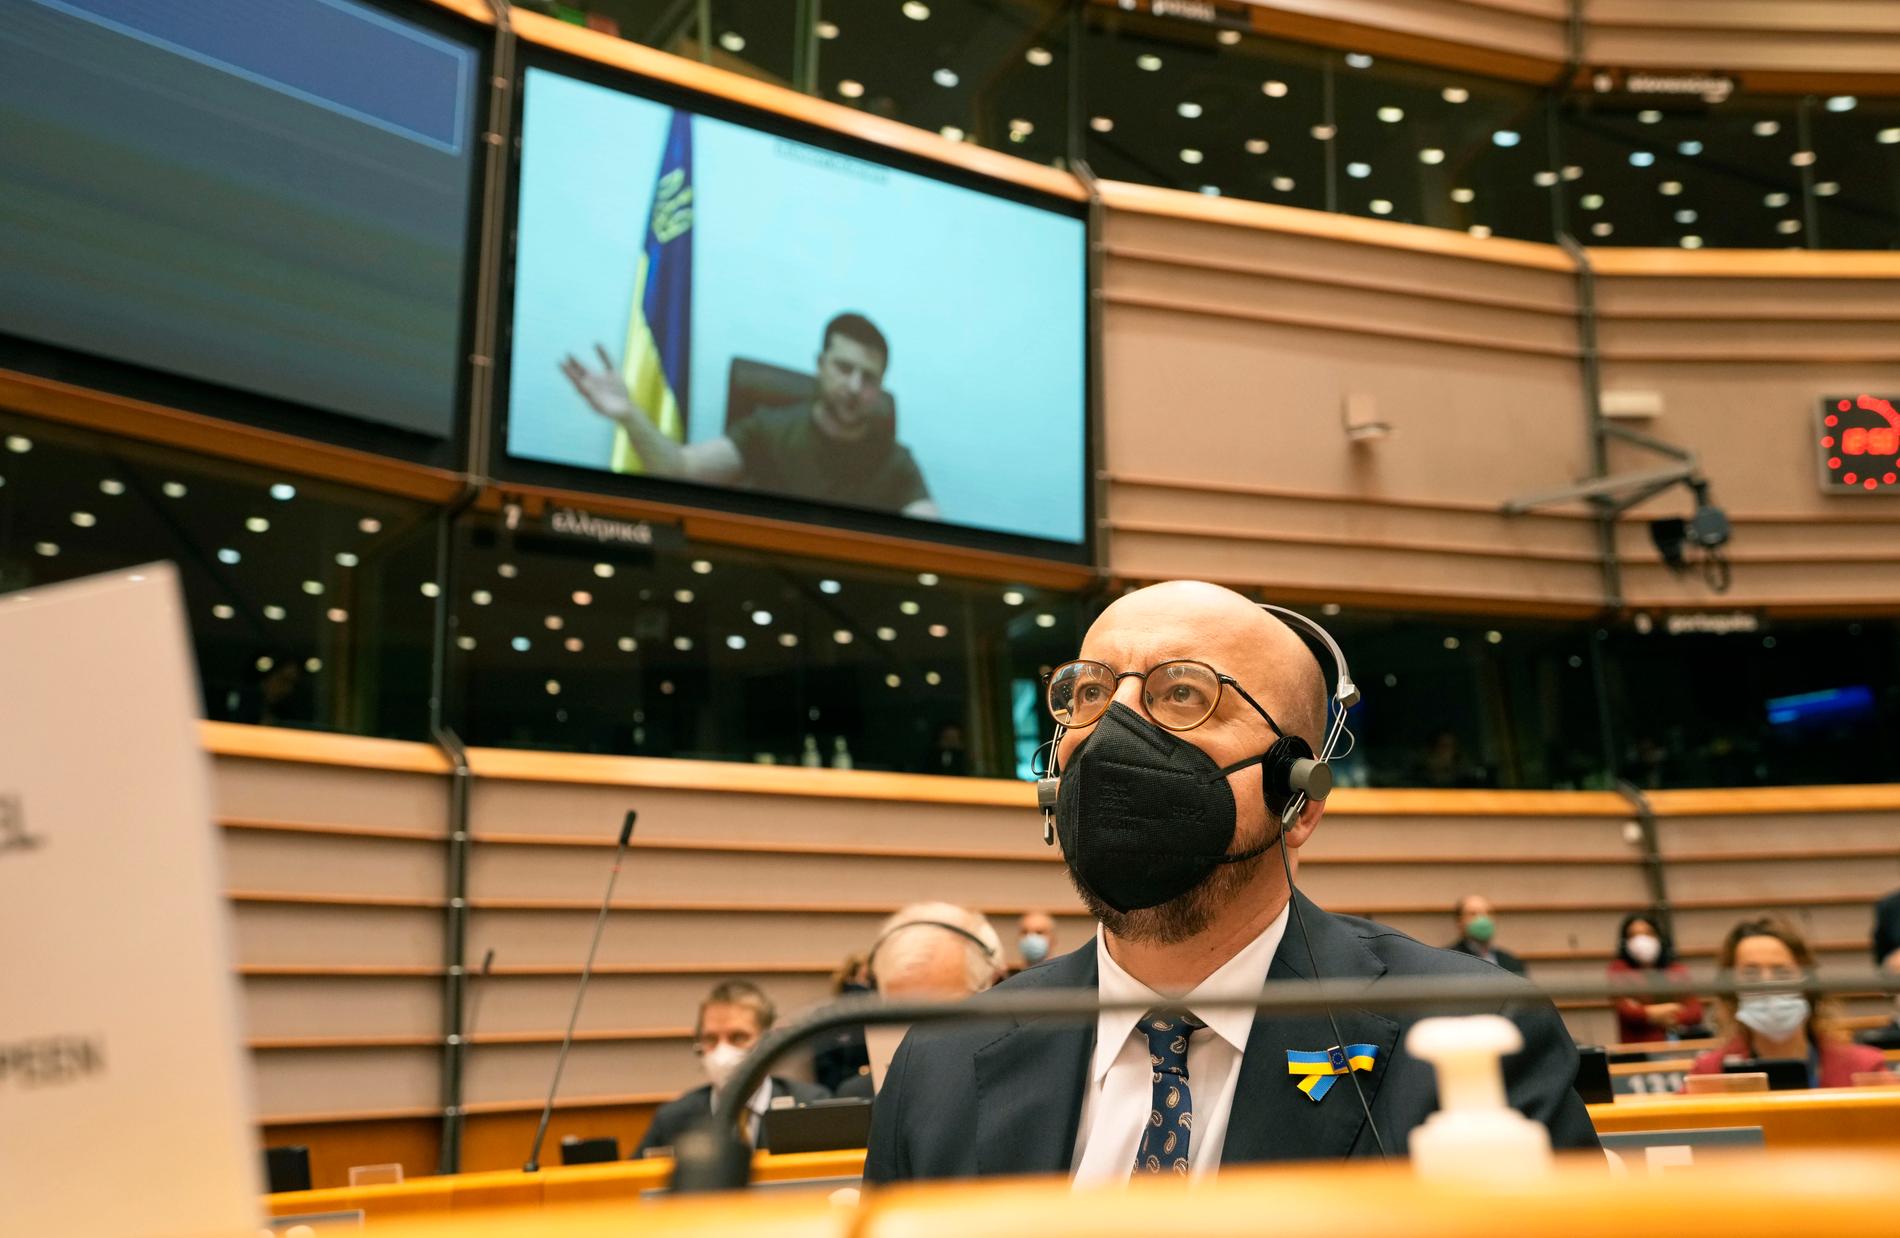 EU:s rådsordförande Charles Michel lyssnar på Ukrainas president Volodymyr Zelenskyj som talar via länk till EU-parlamentet i Bryssel.